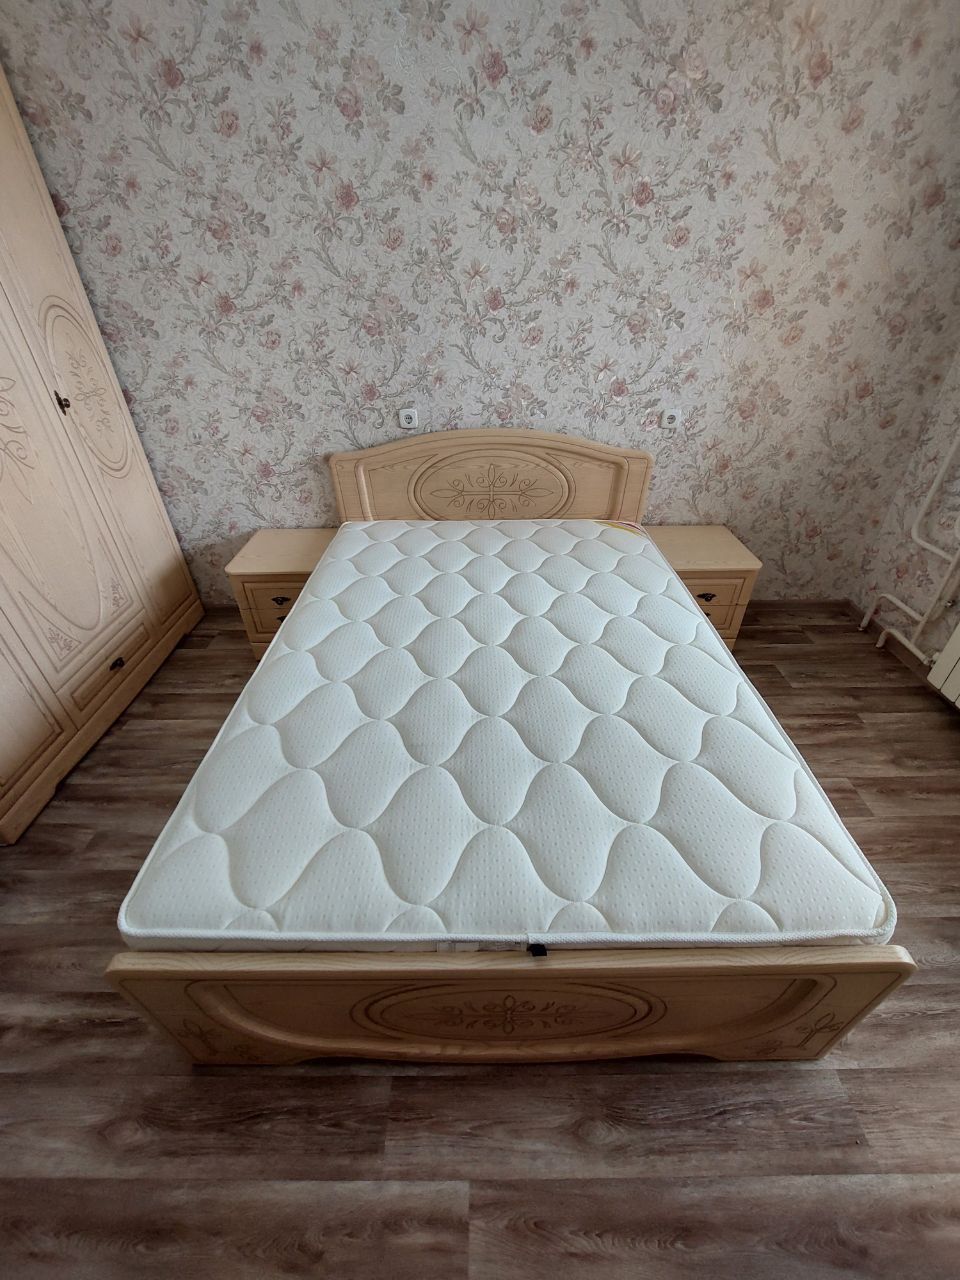 Полутораспальная кровать "Натали"120 х 200 с подъемным мех-ом цвет клен/ясень беж-ый изножье высокое